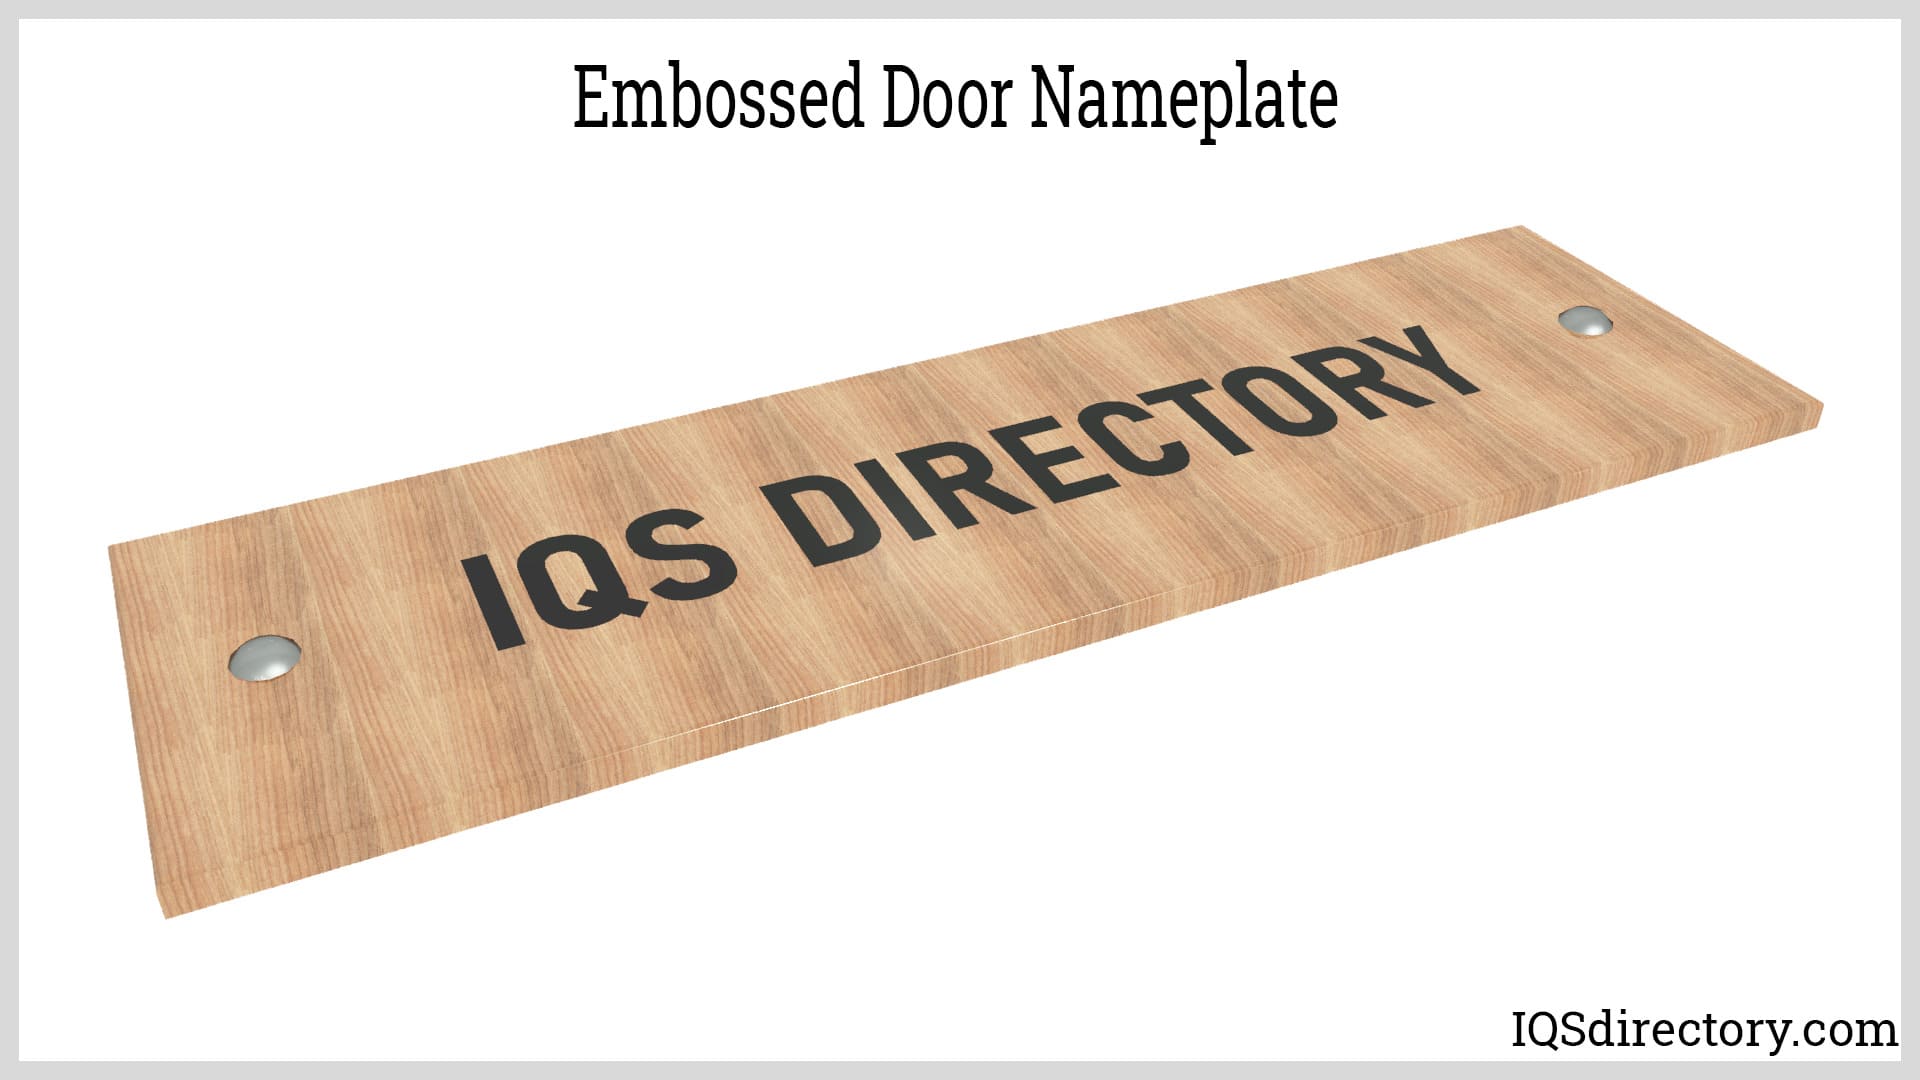 Embossed Door Nameplate